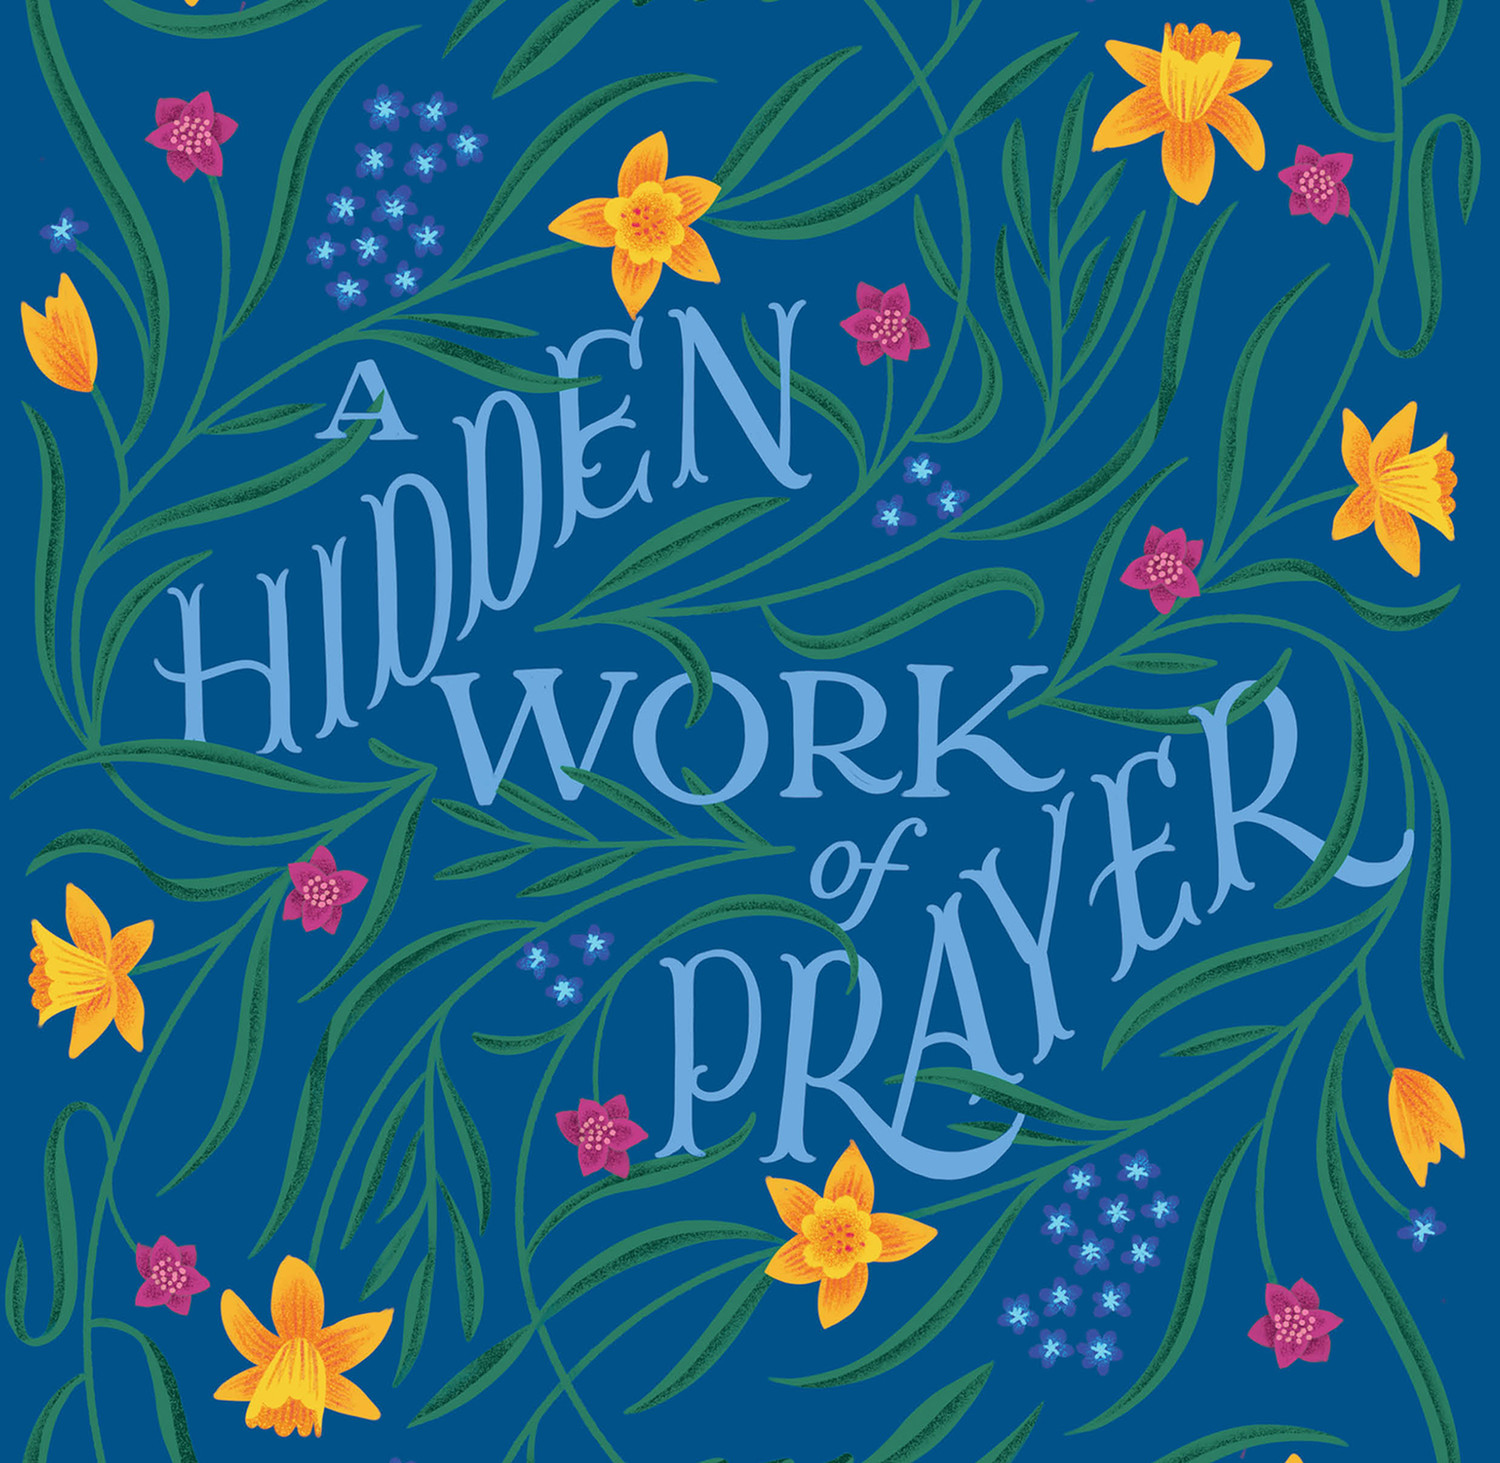 A Hidden Work of Prayer